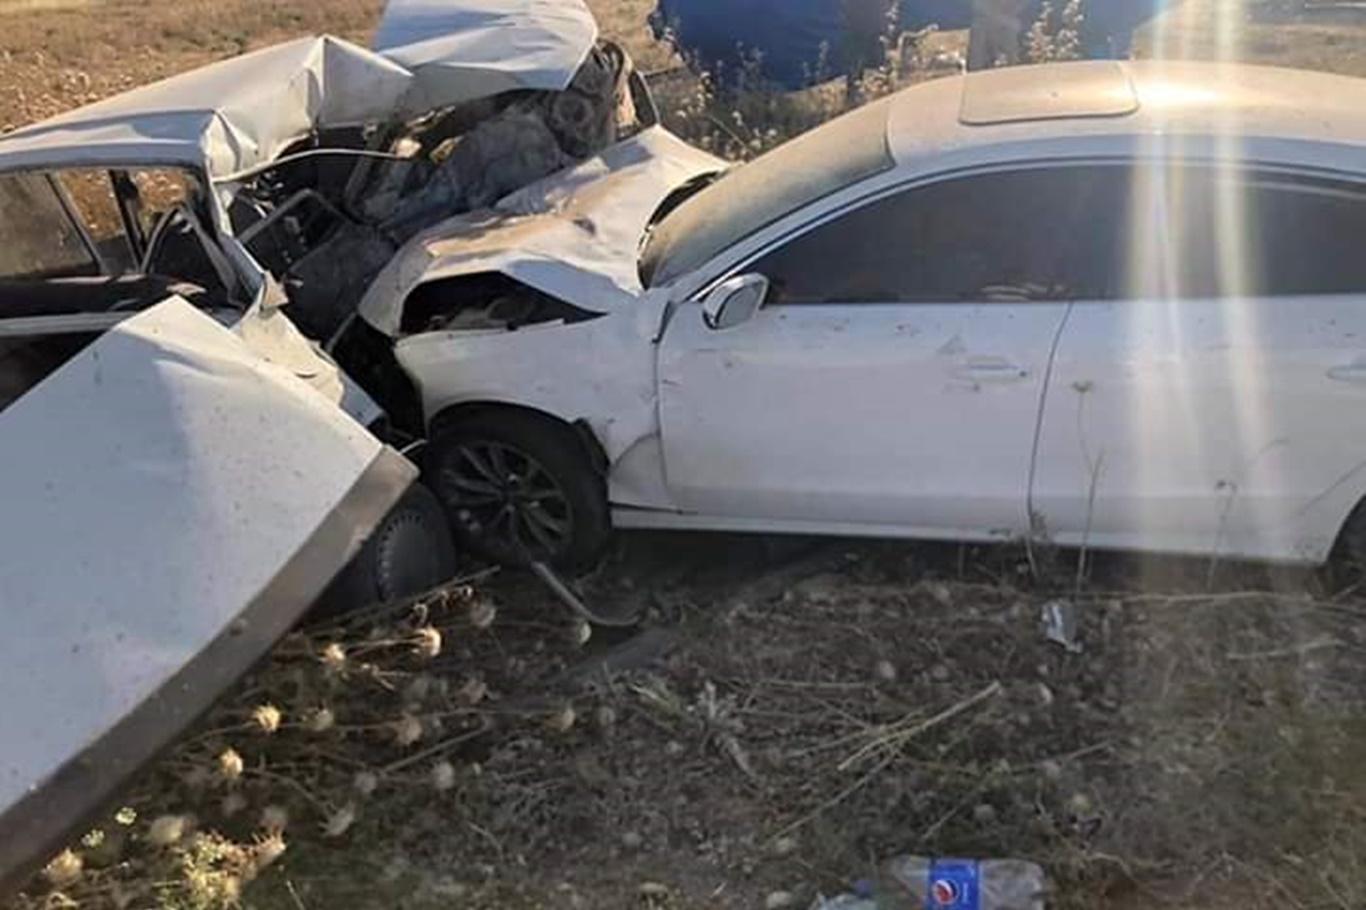 Akçakale Ziraat Odası Başkanının bulunduğu araç kaza yaptı: Bir ölü 2 yaralı